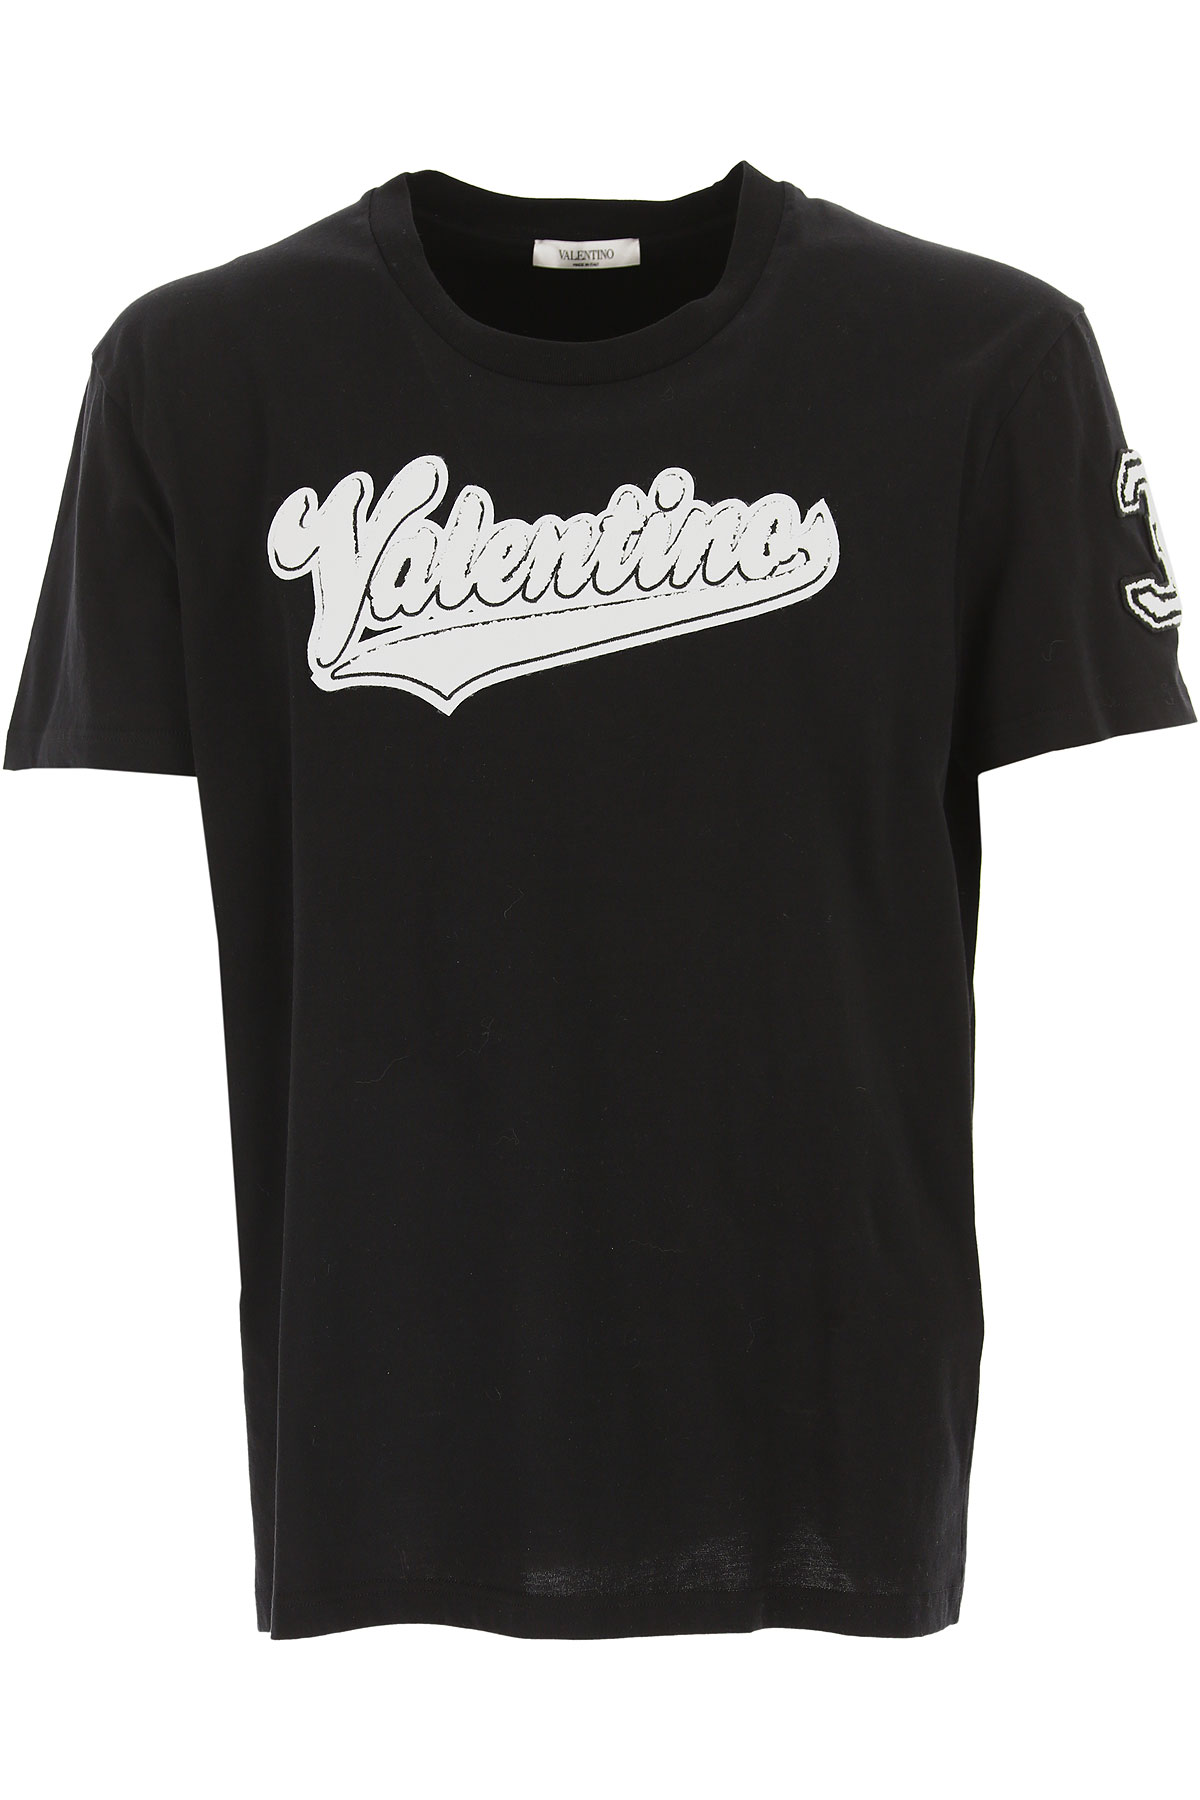 Valentino T-shirt Homme, Noir, Coton, 2017, L M S XS